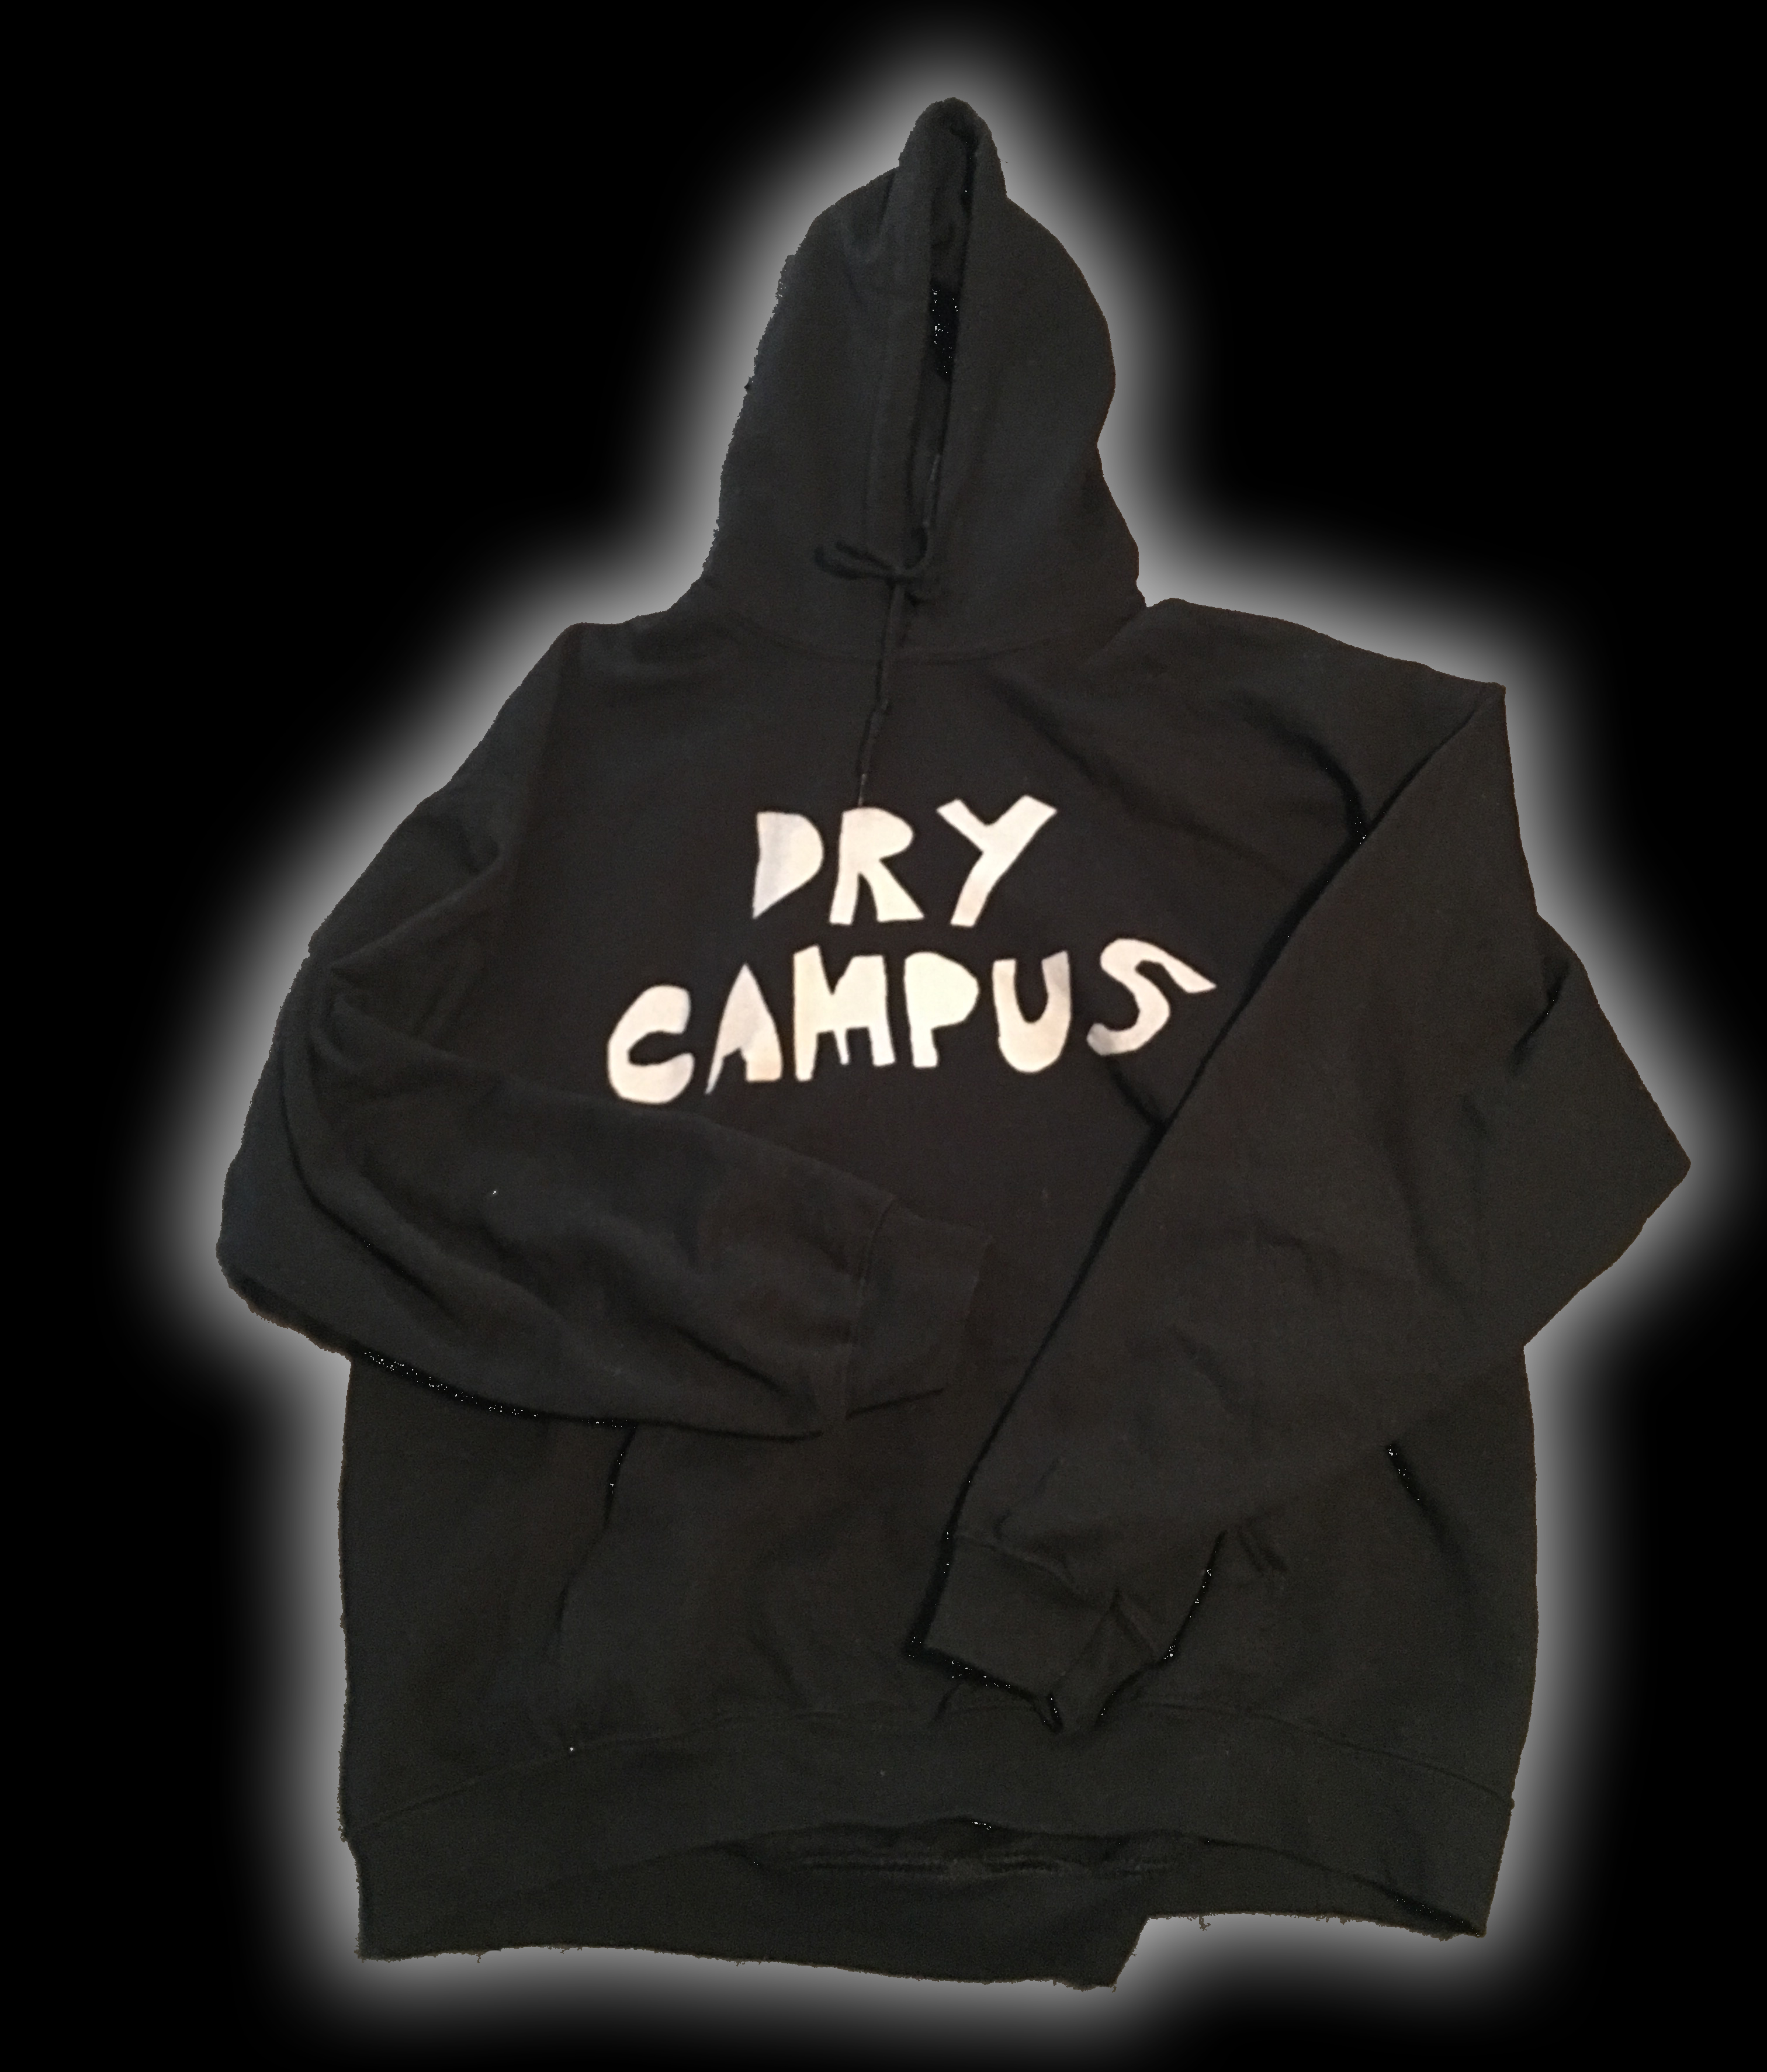 Dry Campus Hooded Sweatshirt